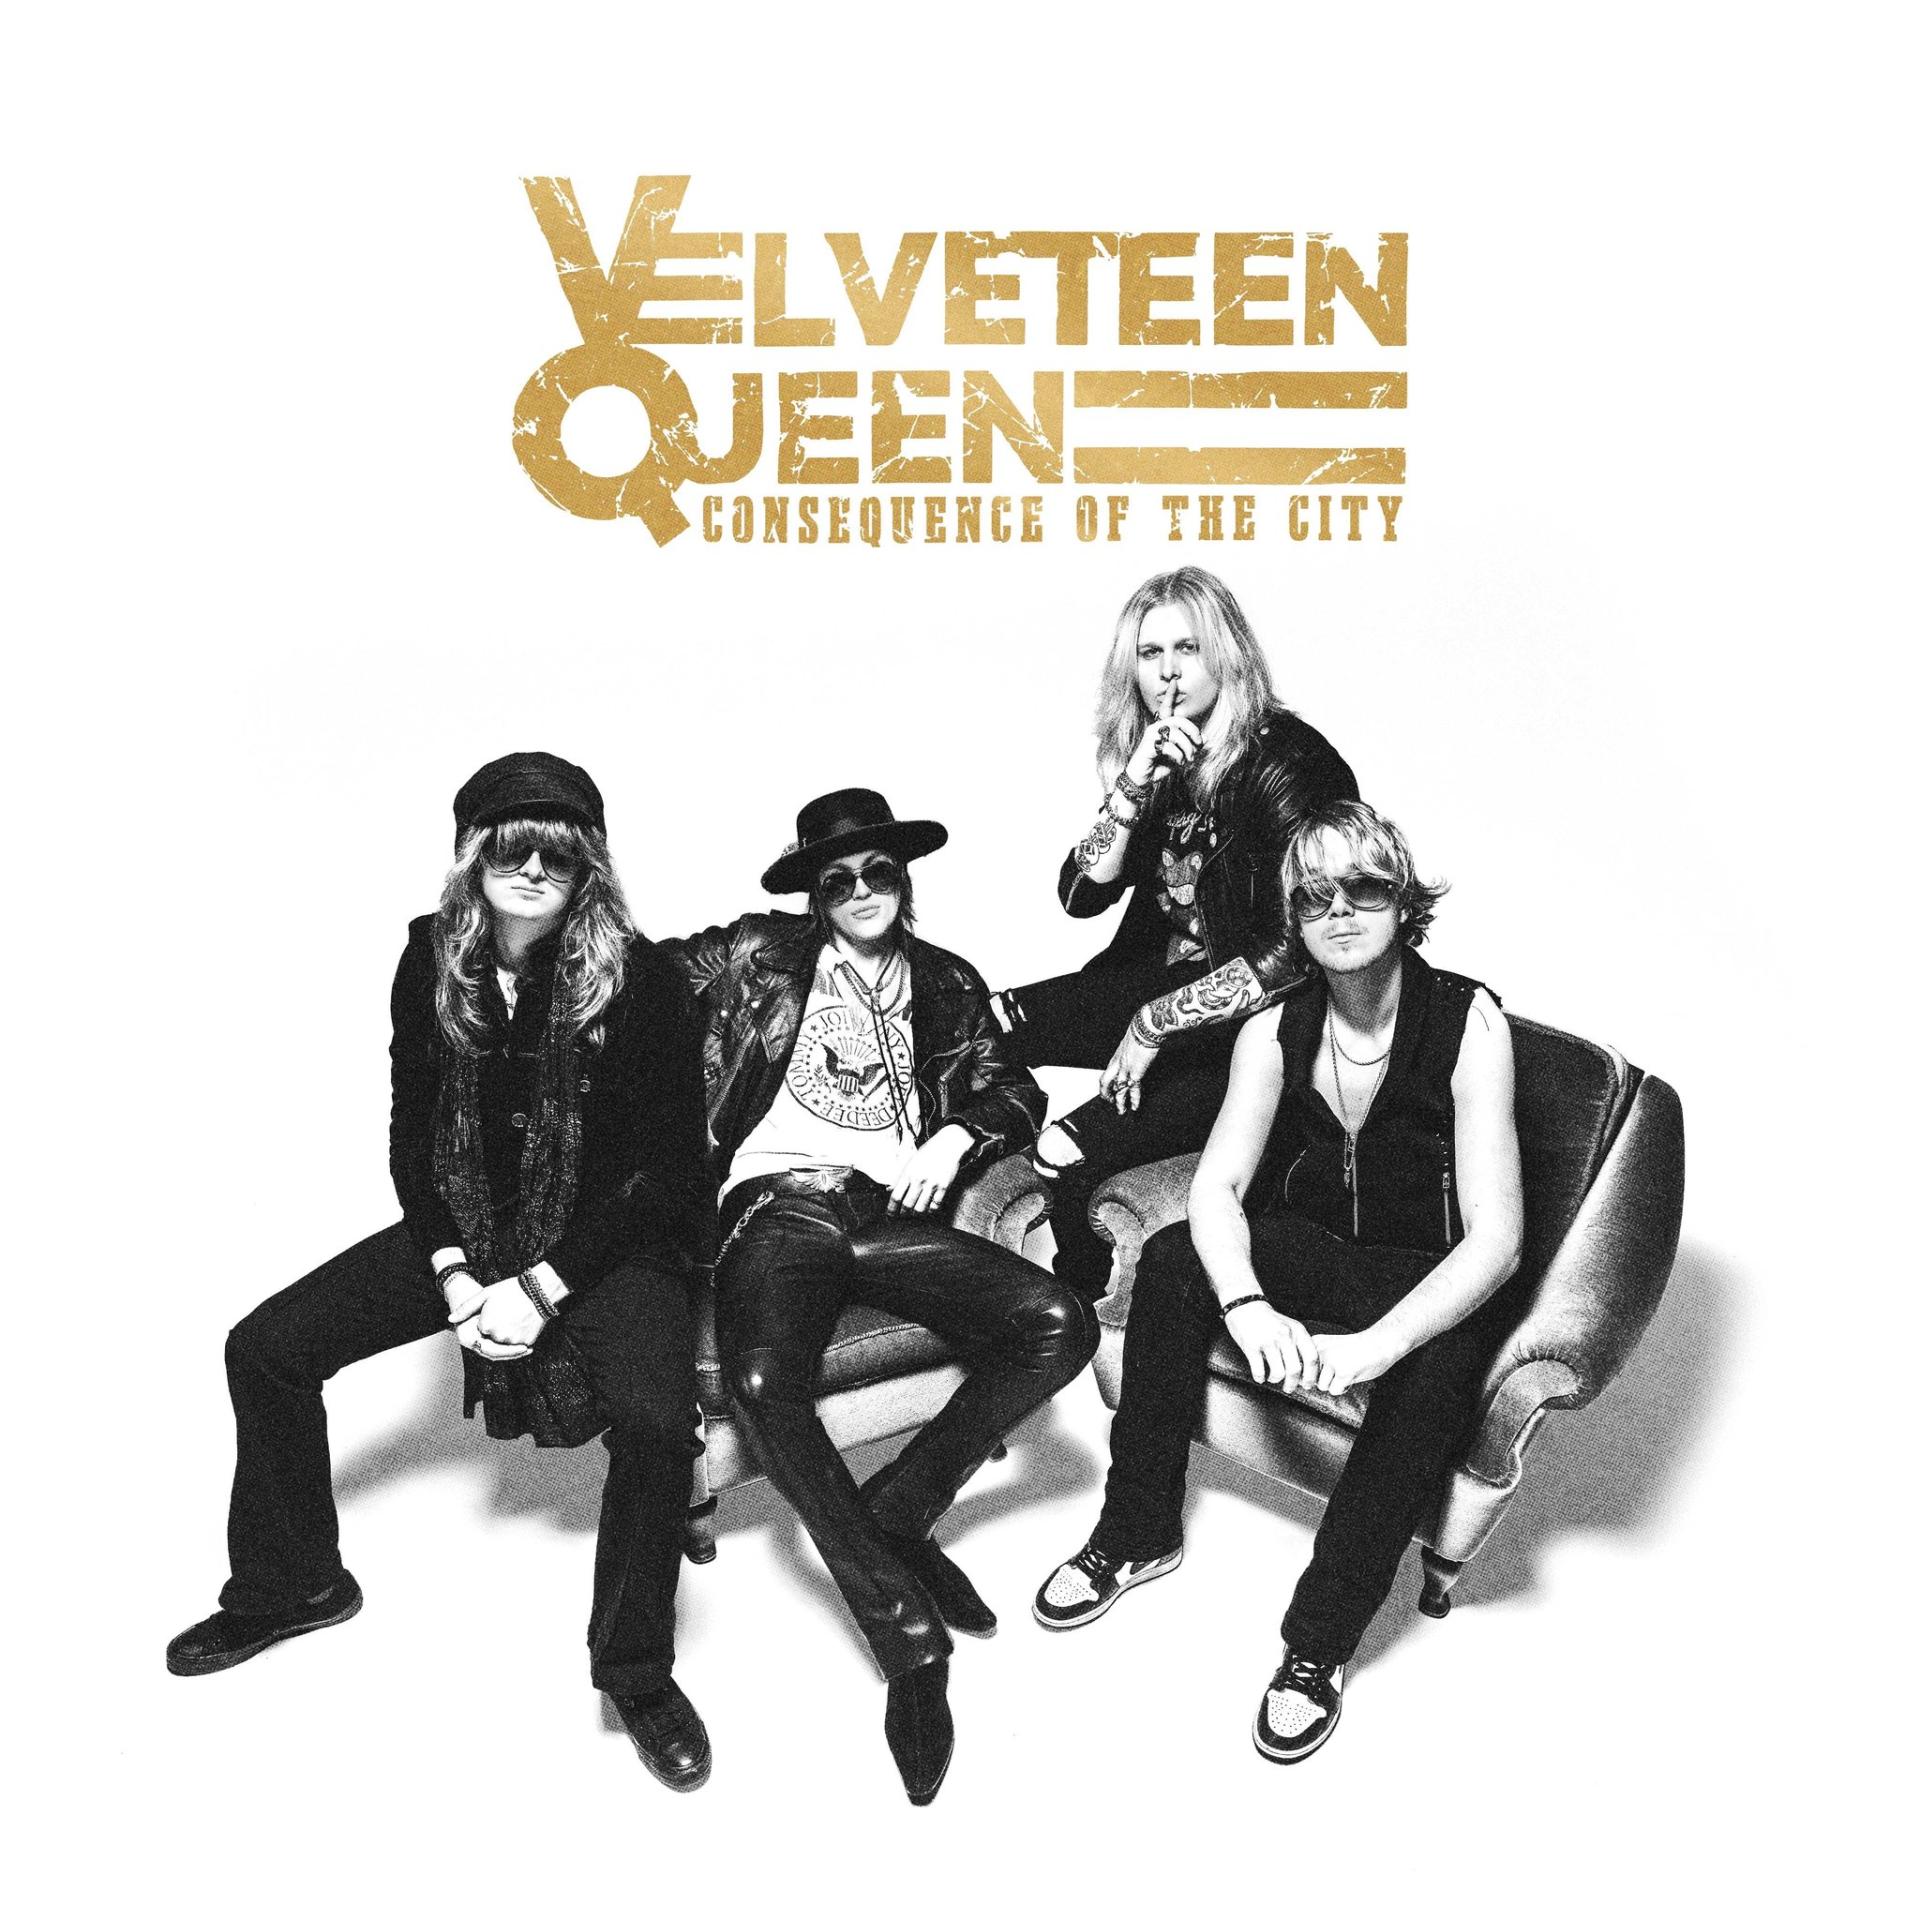 Velveteen queen